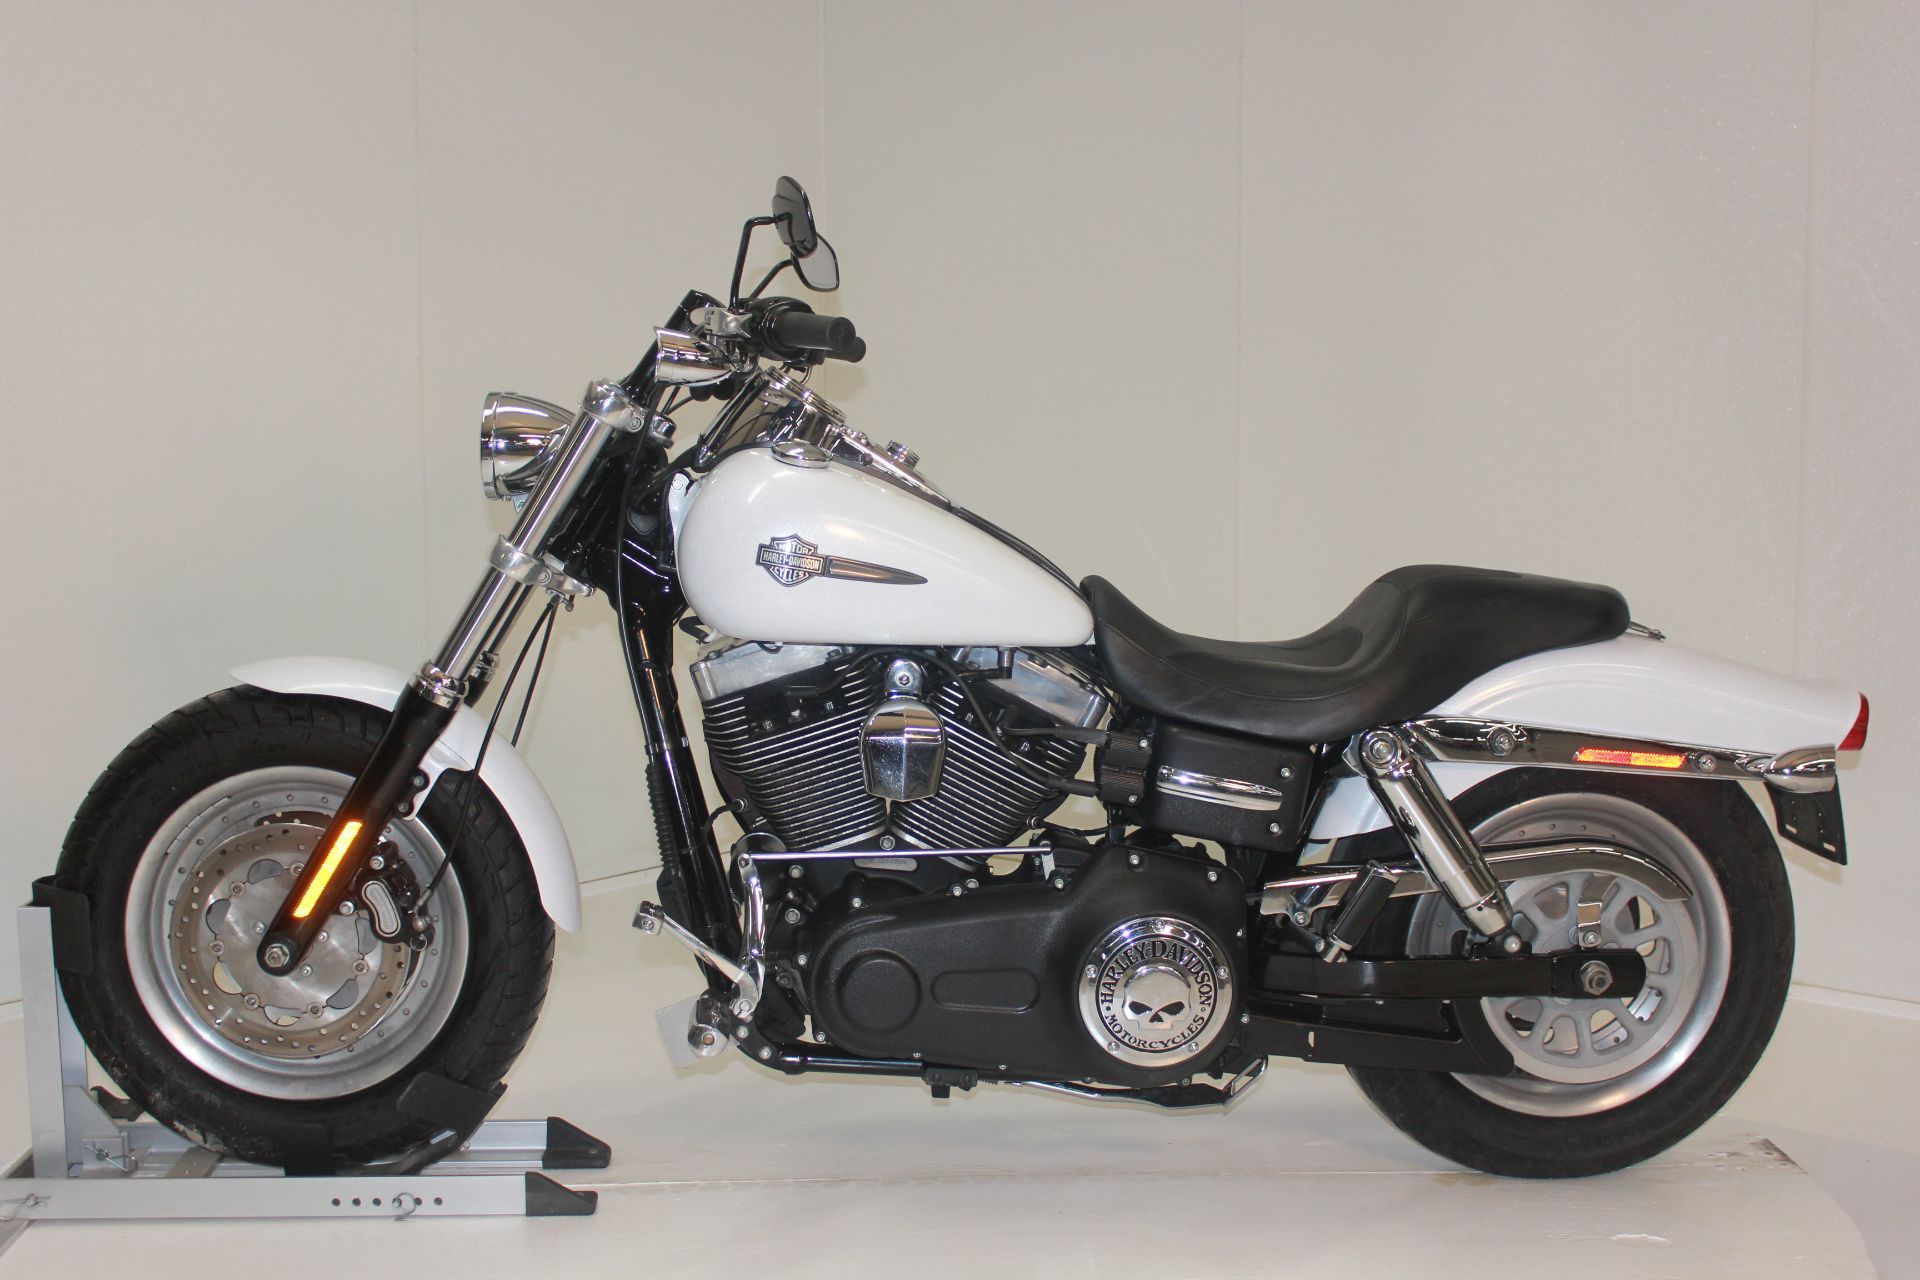 2011 Harley-Davidson Dyna® Fat Bob® in Pittsfield, Massachusetts - Photo 1